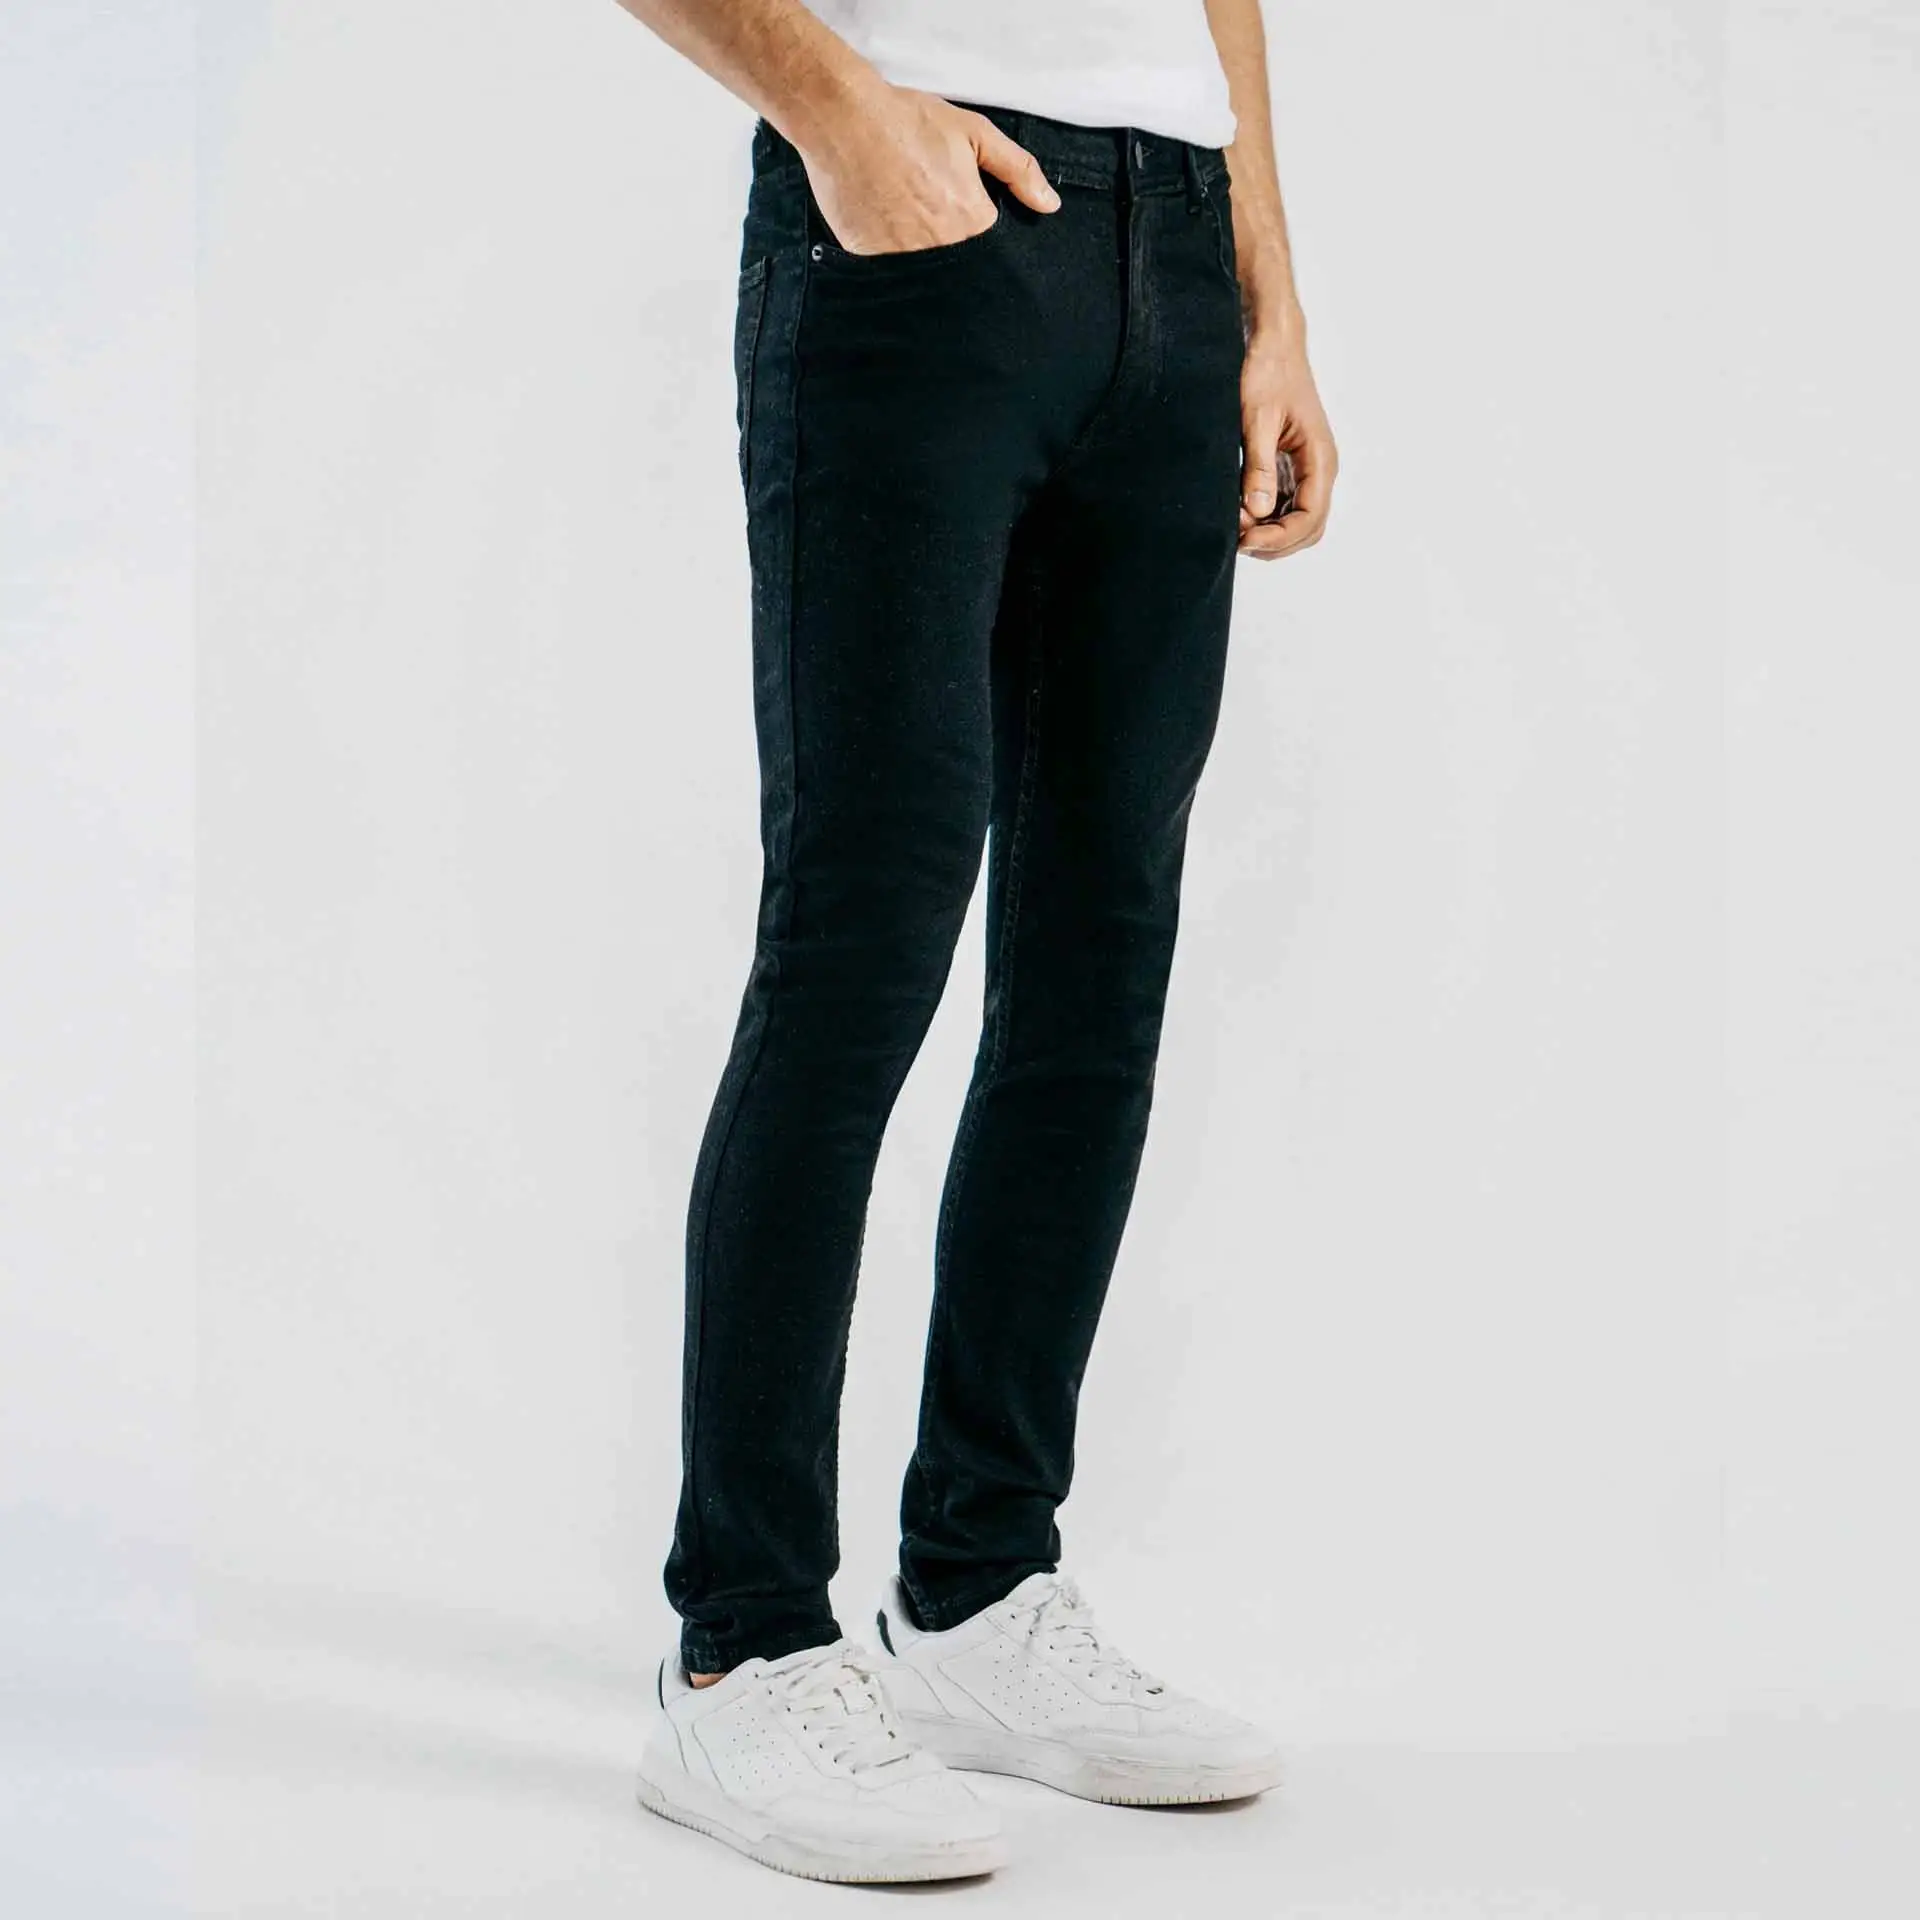 Moda estilo personalizado Jean para hombre bordado parcheado Denim Skinny alta calidad Jeans para hombre